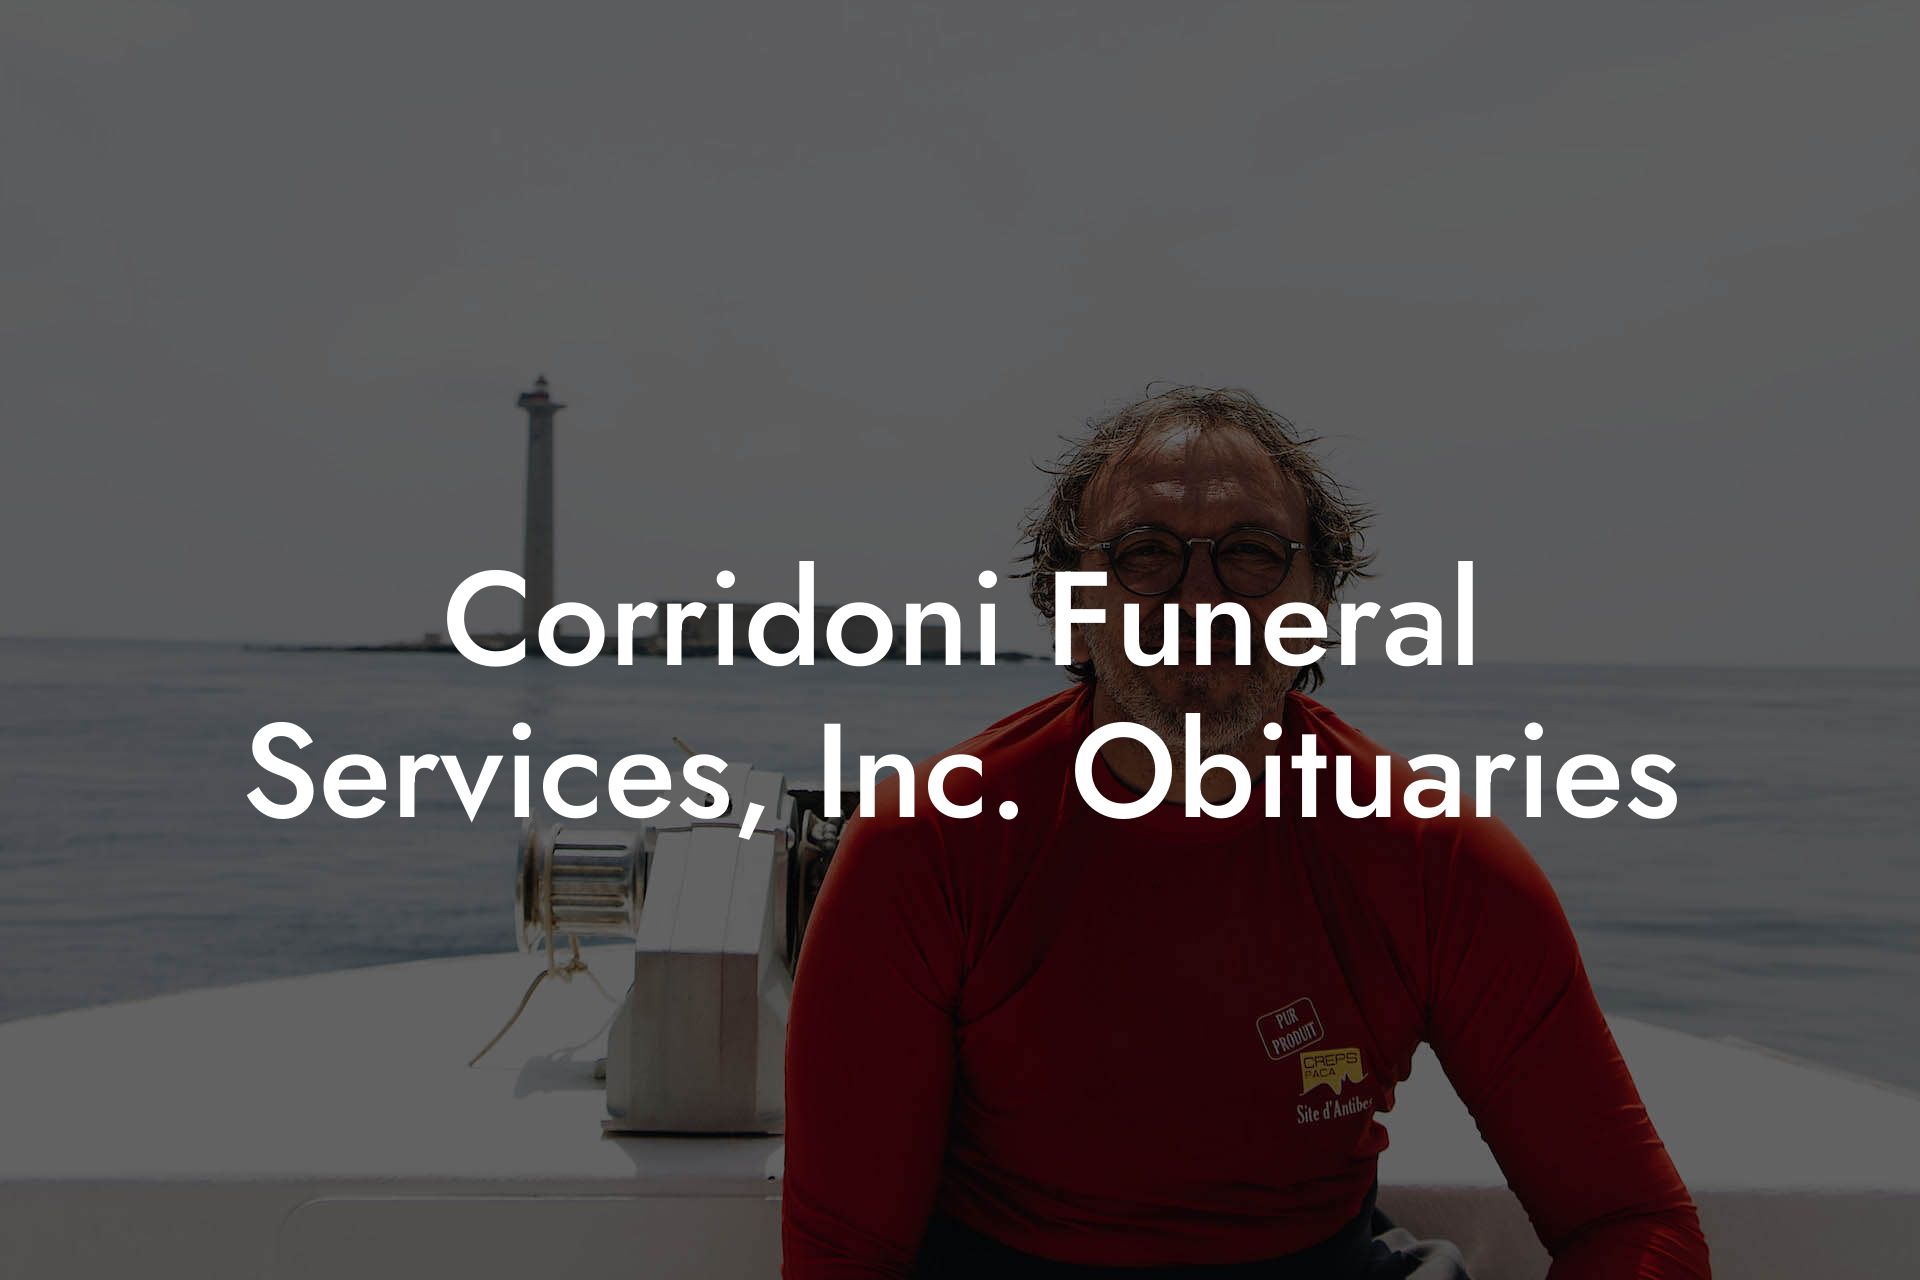 Corridoni Funeral Services, Inc. Obituaries